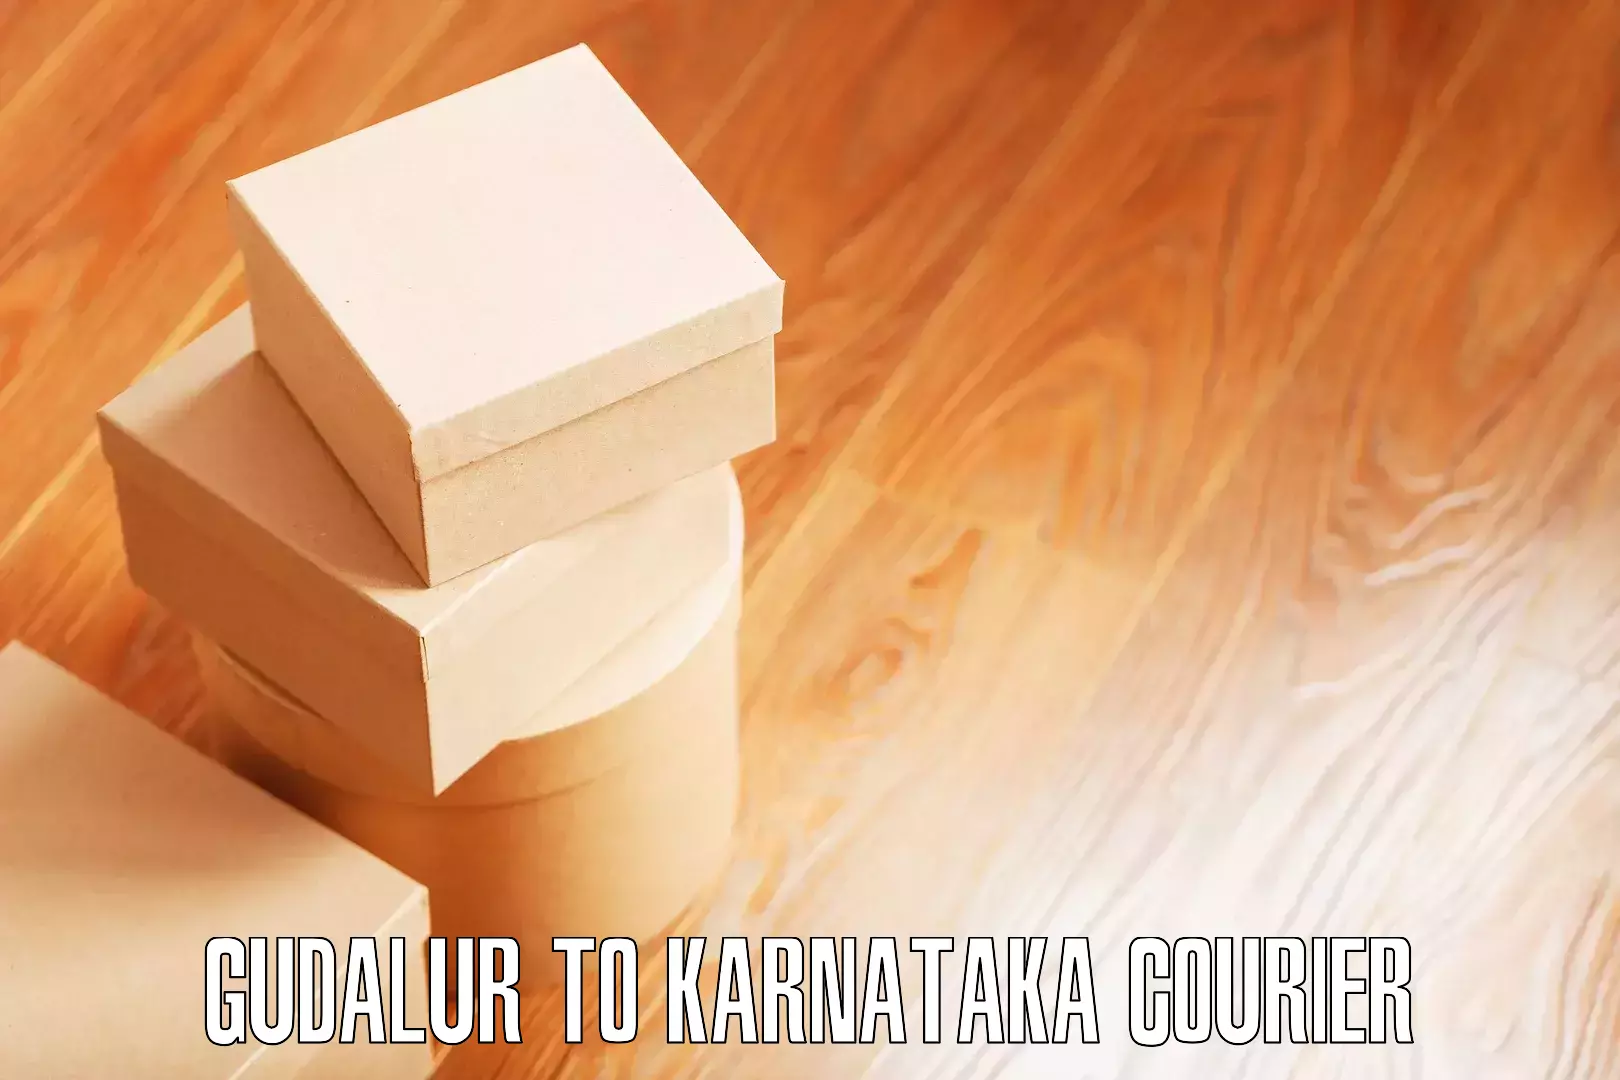 Quality furniture moving Gudalur to Bangarapet